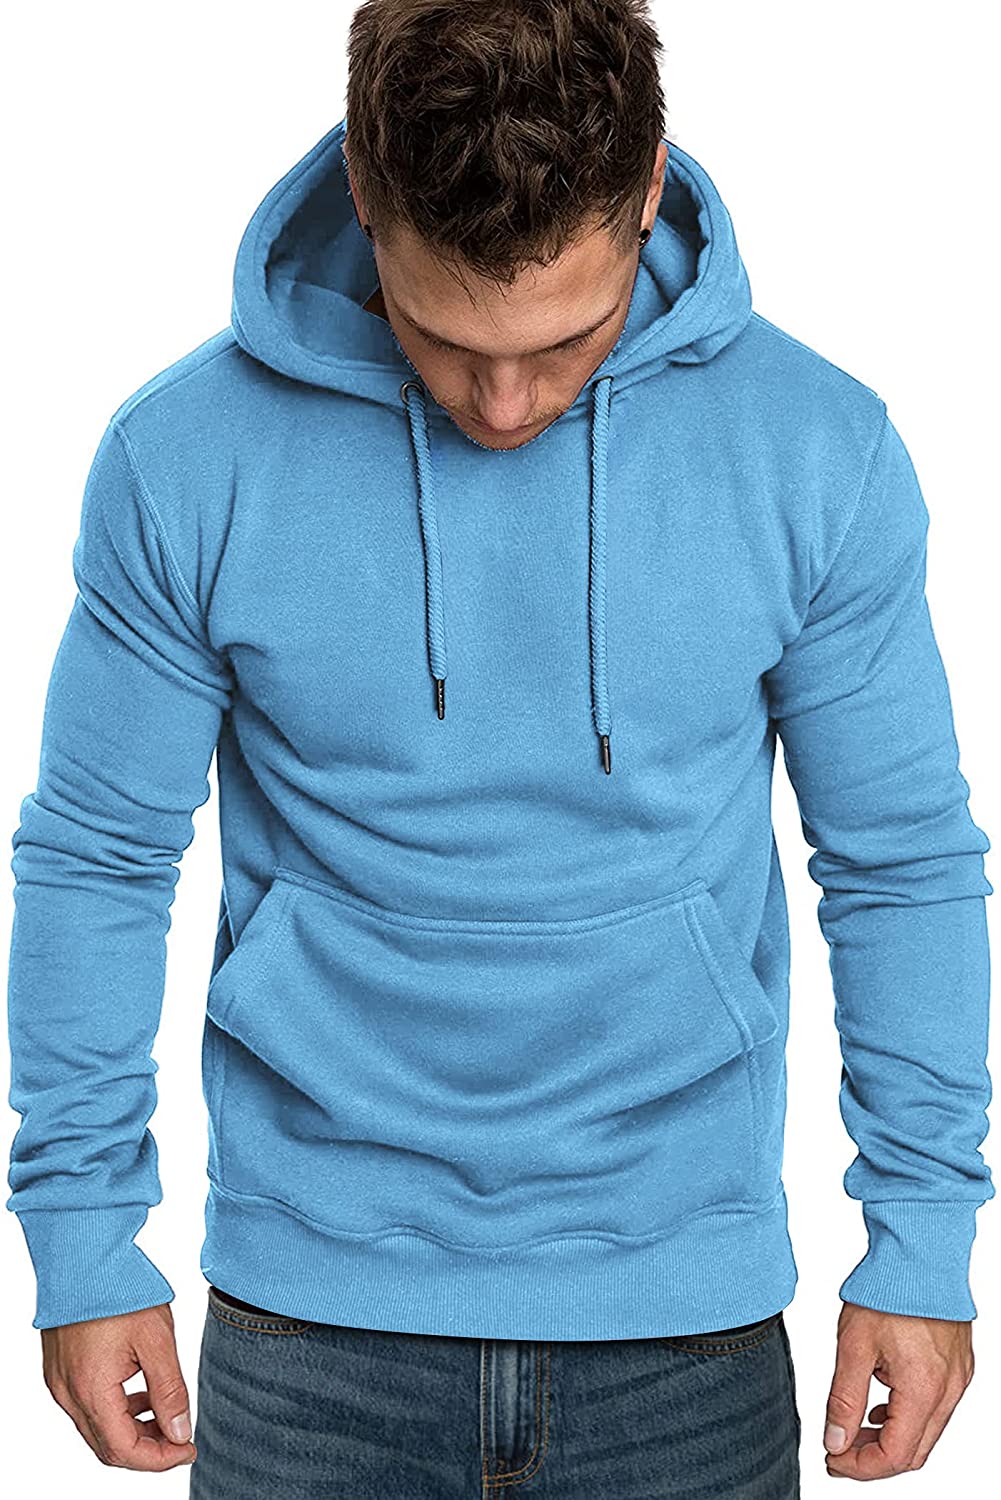 COOFANDY Men's Hoodies Sweatshirts Casual Lightweight Long Sleeves Athletic Pullovers 